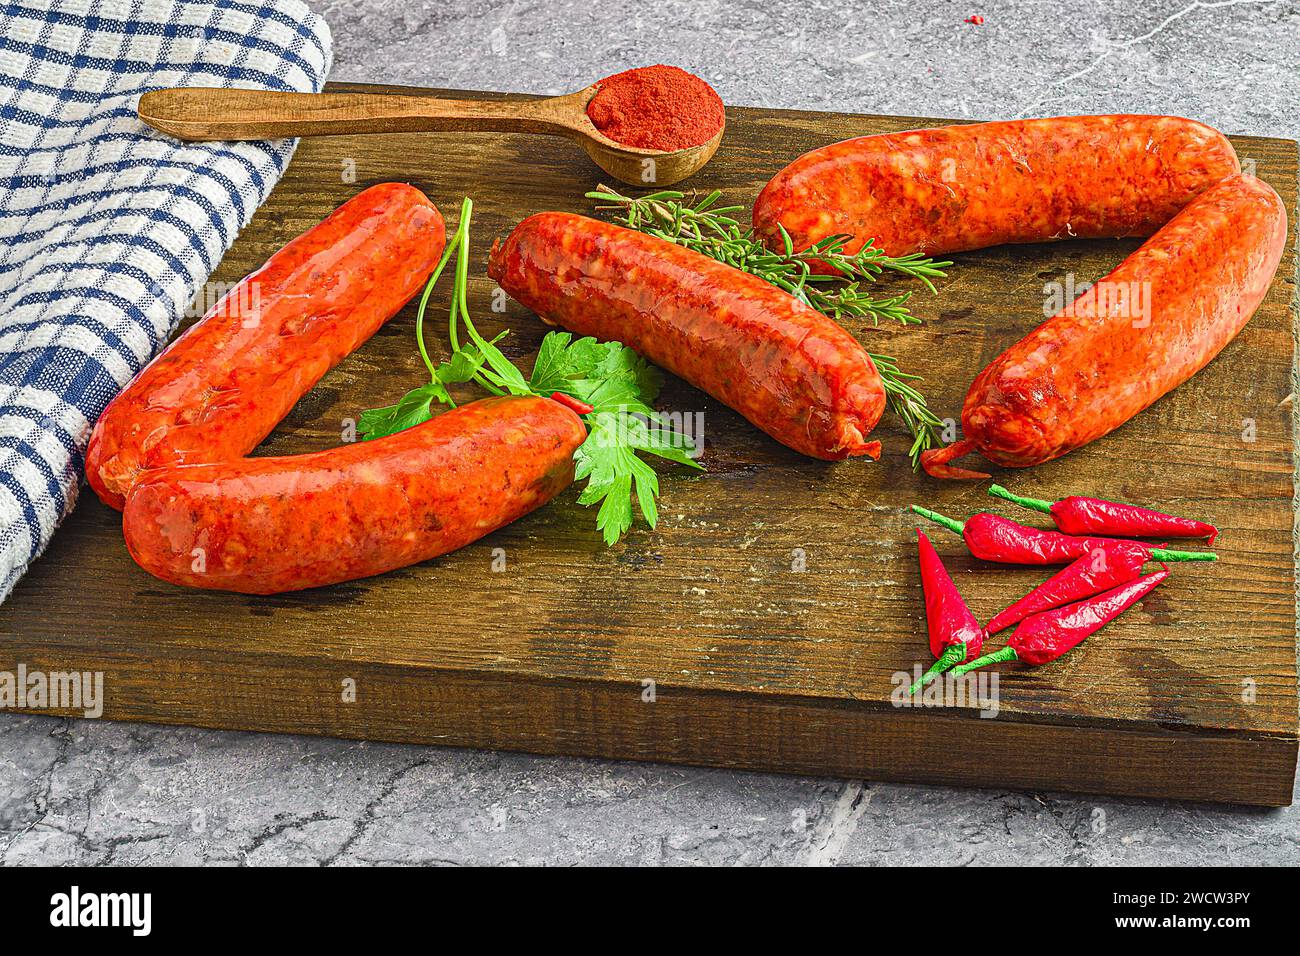 Gli hot dog assortiti adornati con erbe aromatiche e peperoni su una tavola di legno Foto Stock